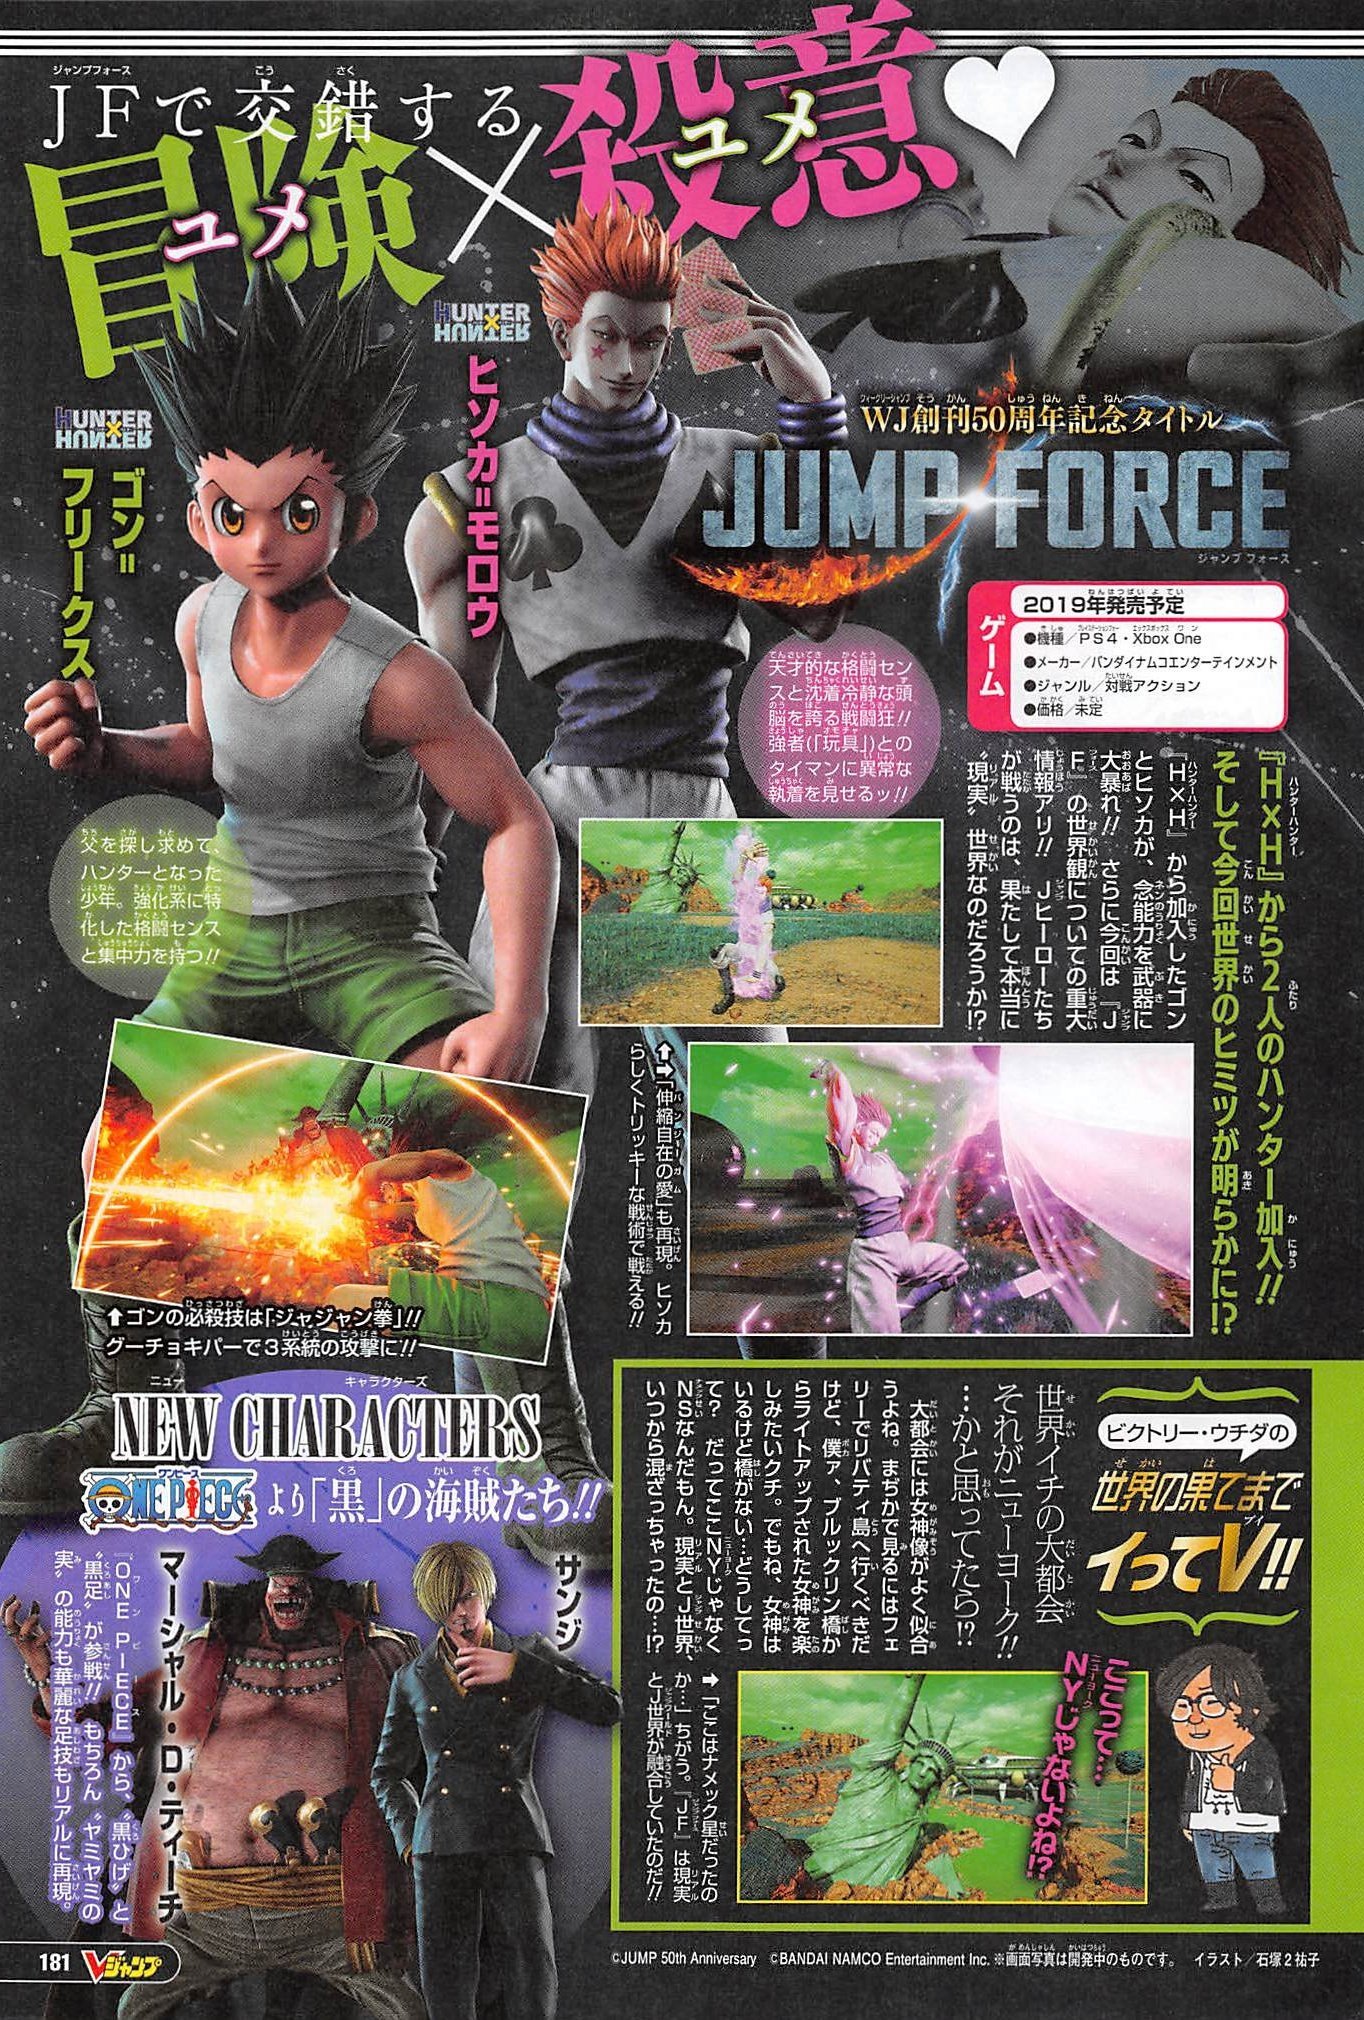 Gon Freecss e Hisoka Morow, de Hunter x Hunter, estarão em Jump Force